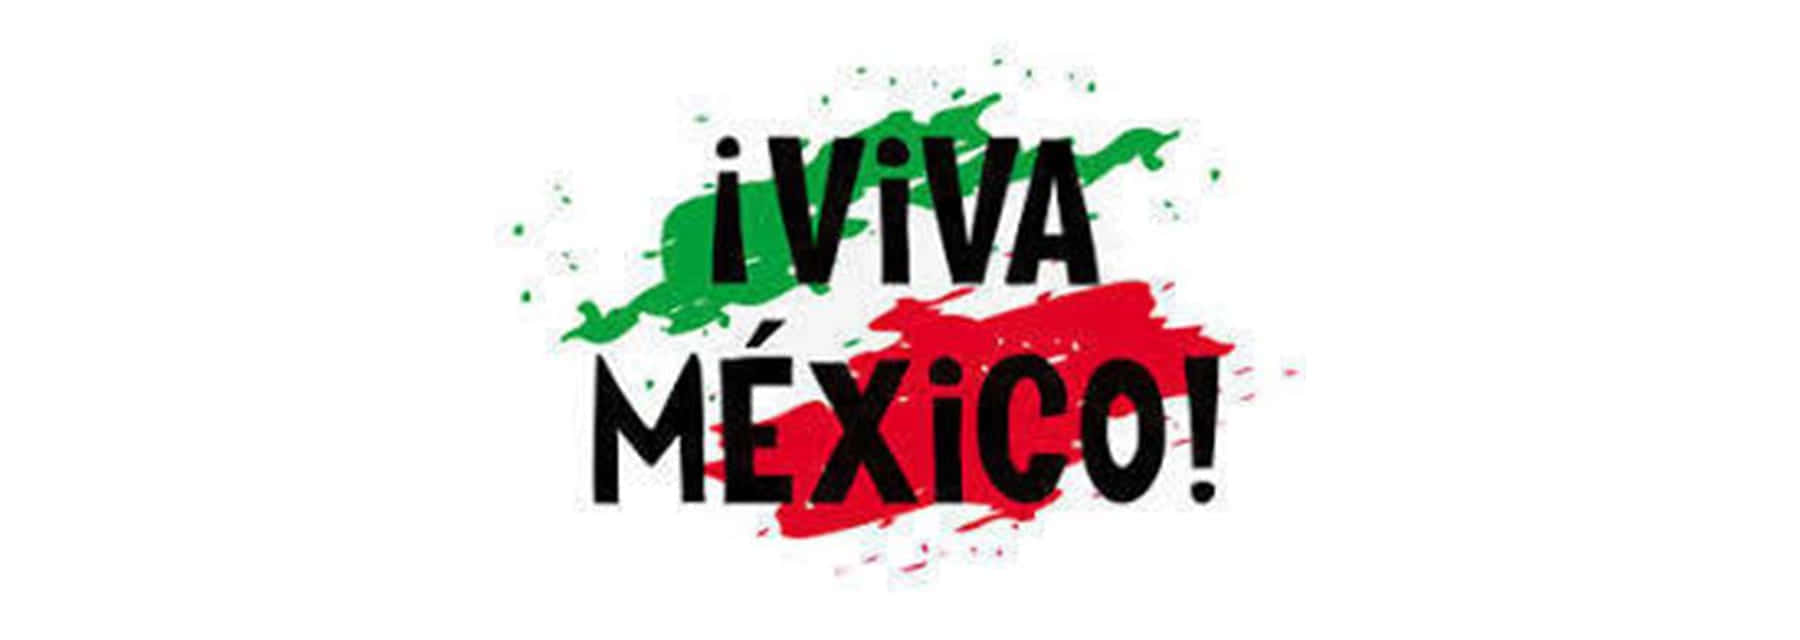 Celebracon Viva Mexico! Sfondo